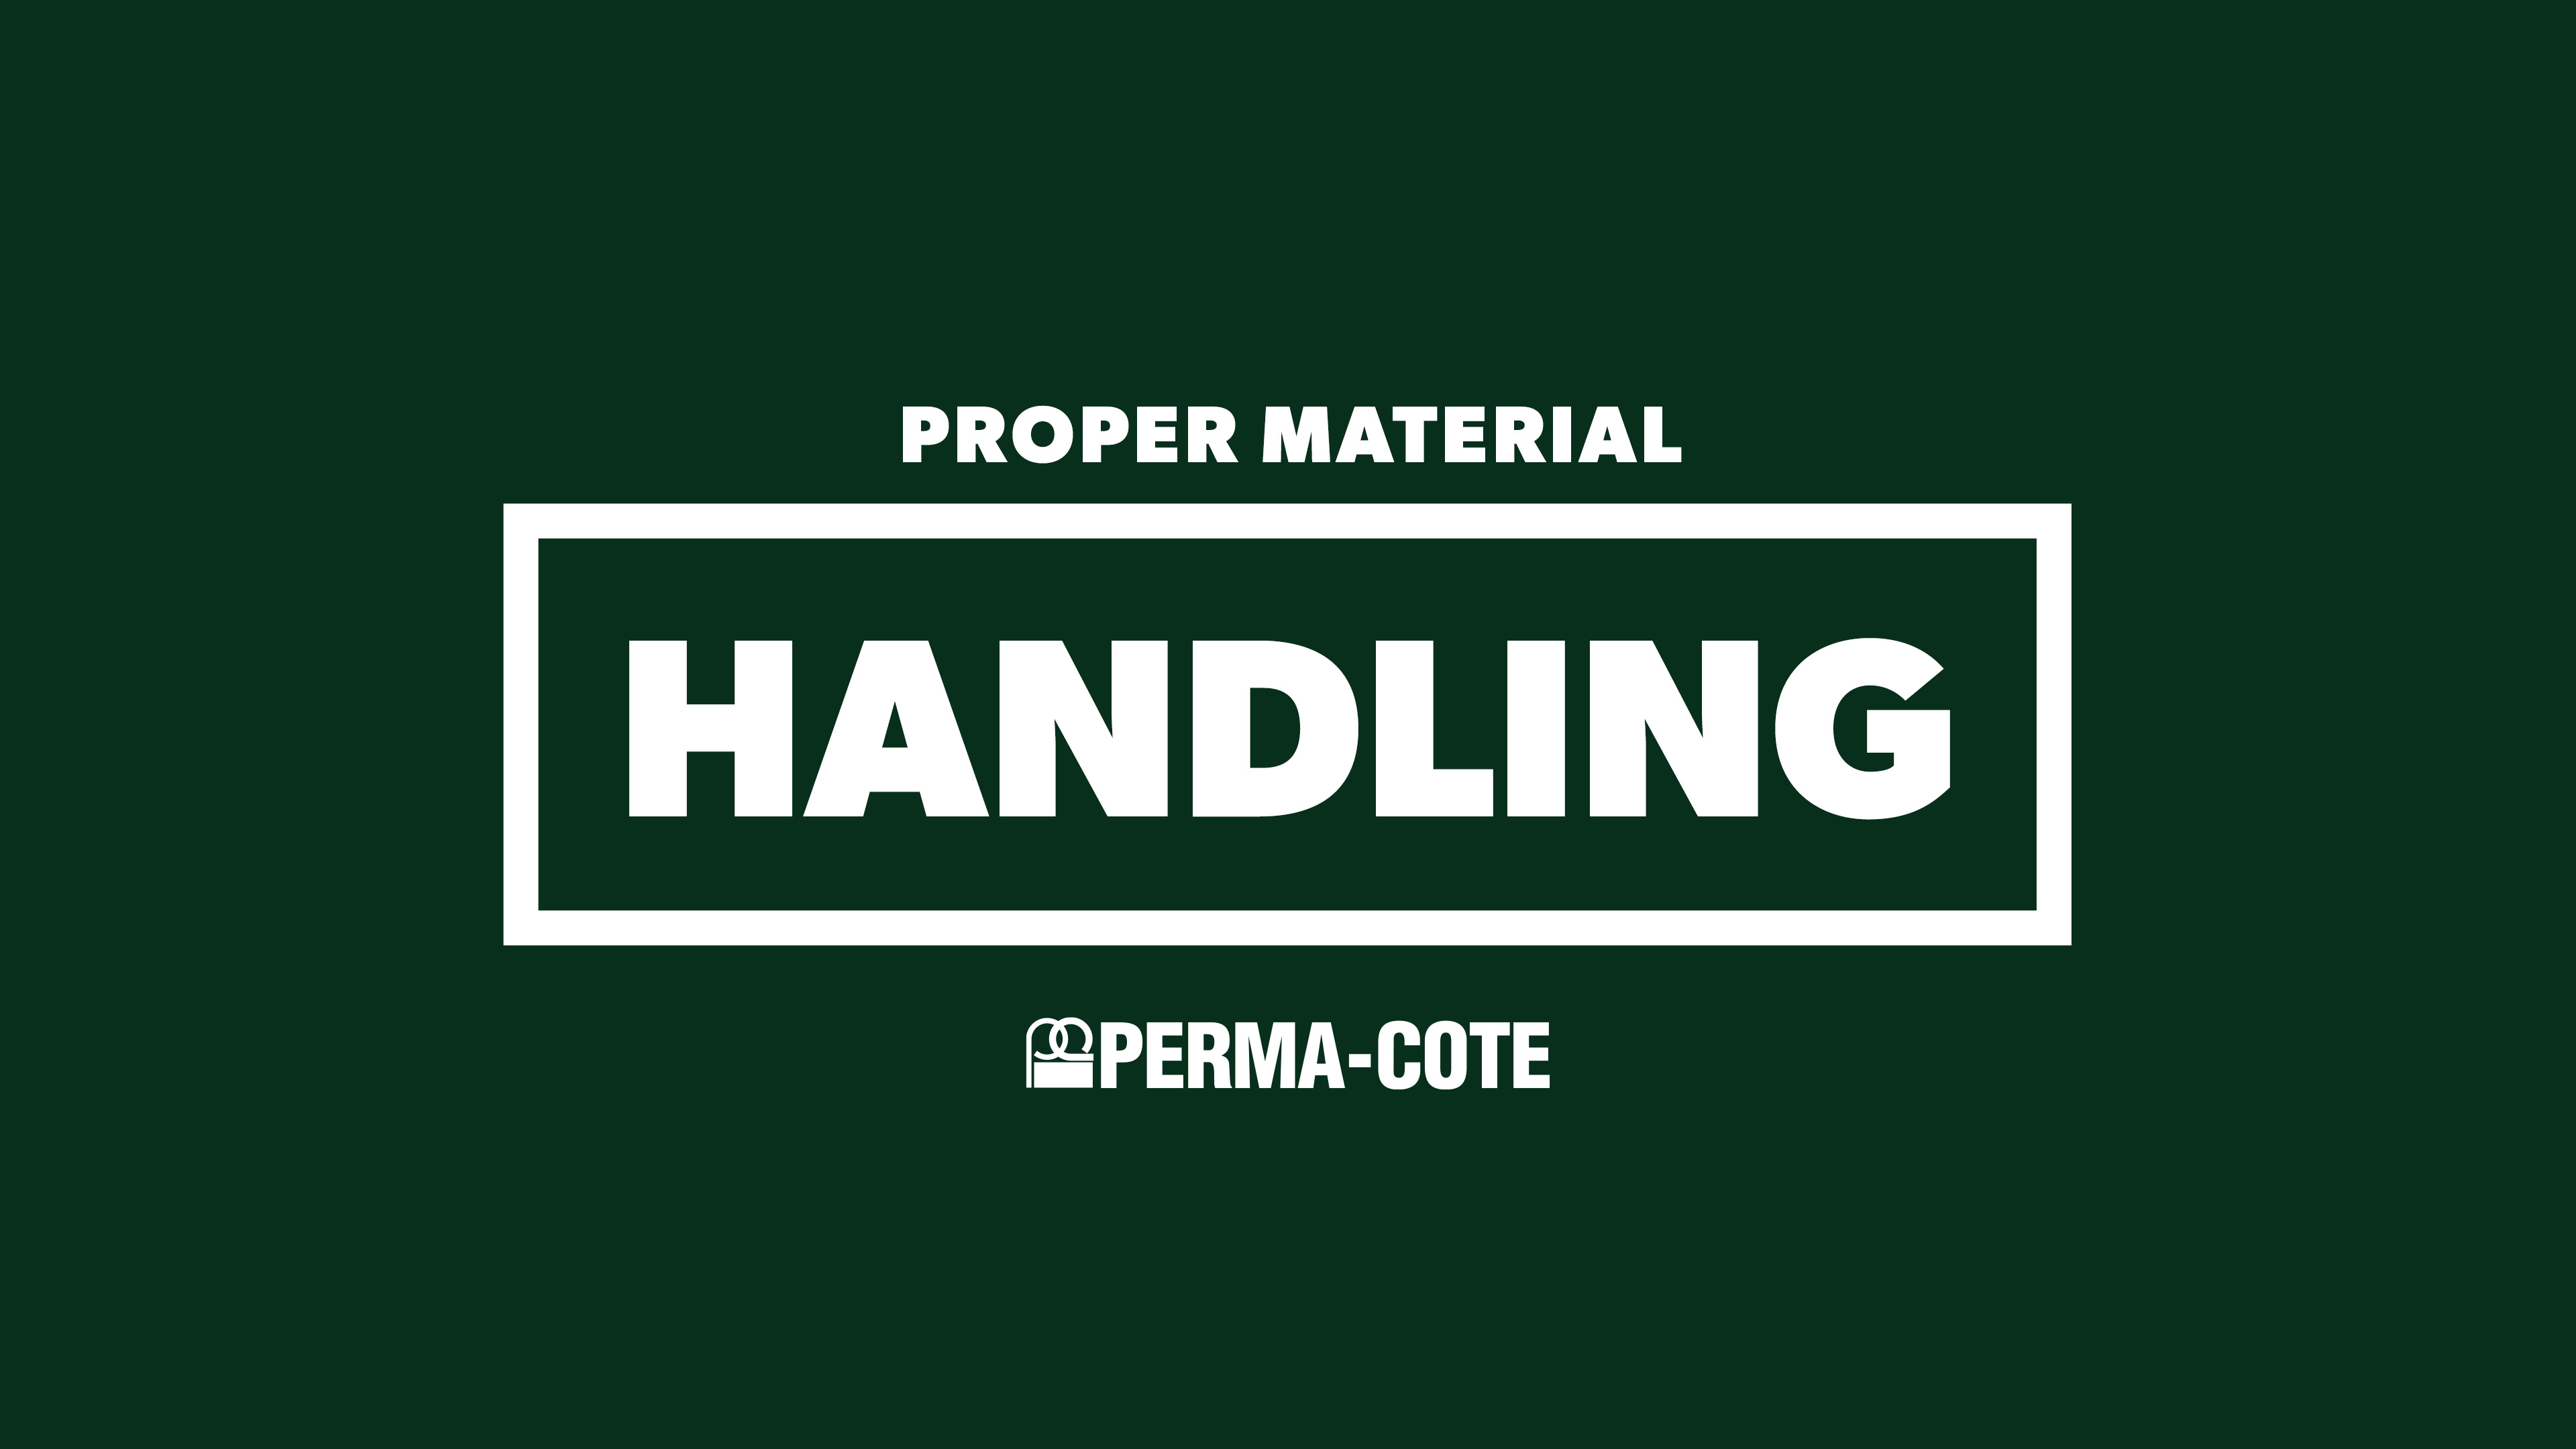 Perma-Cote Proper Material Handling Video